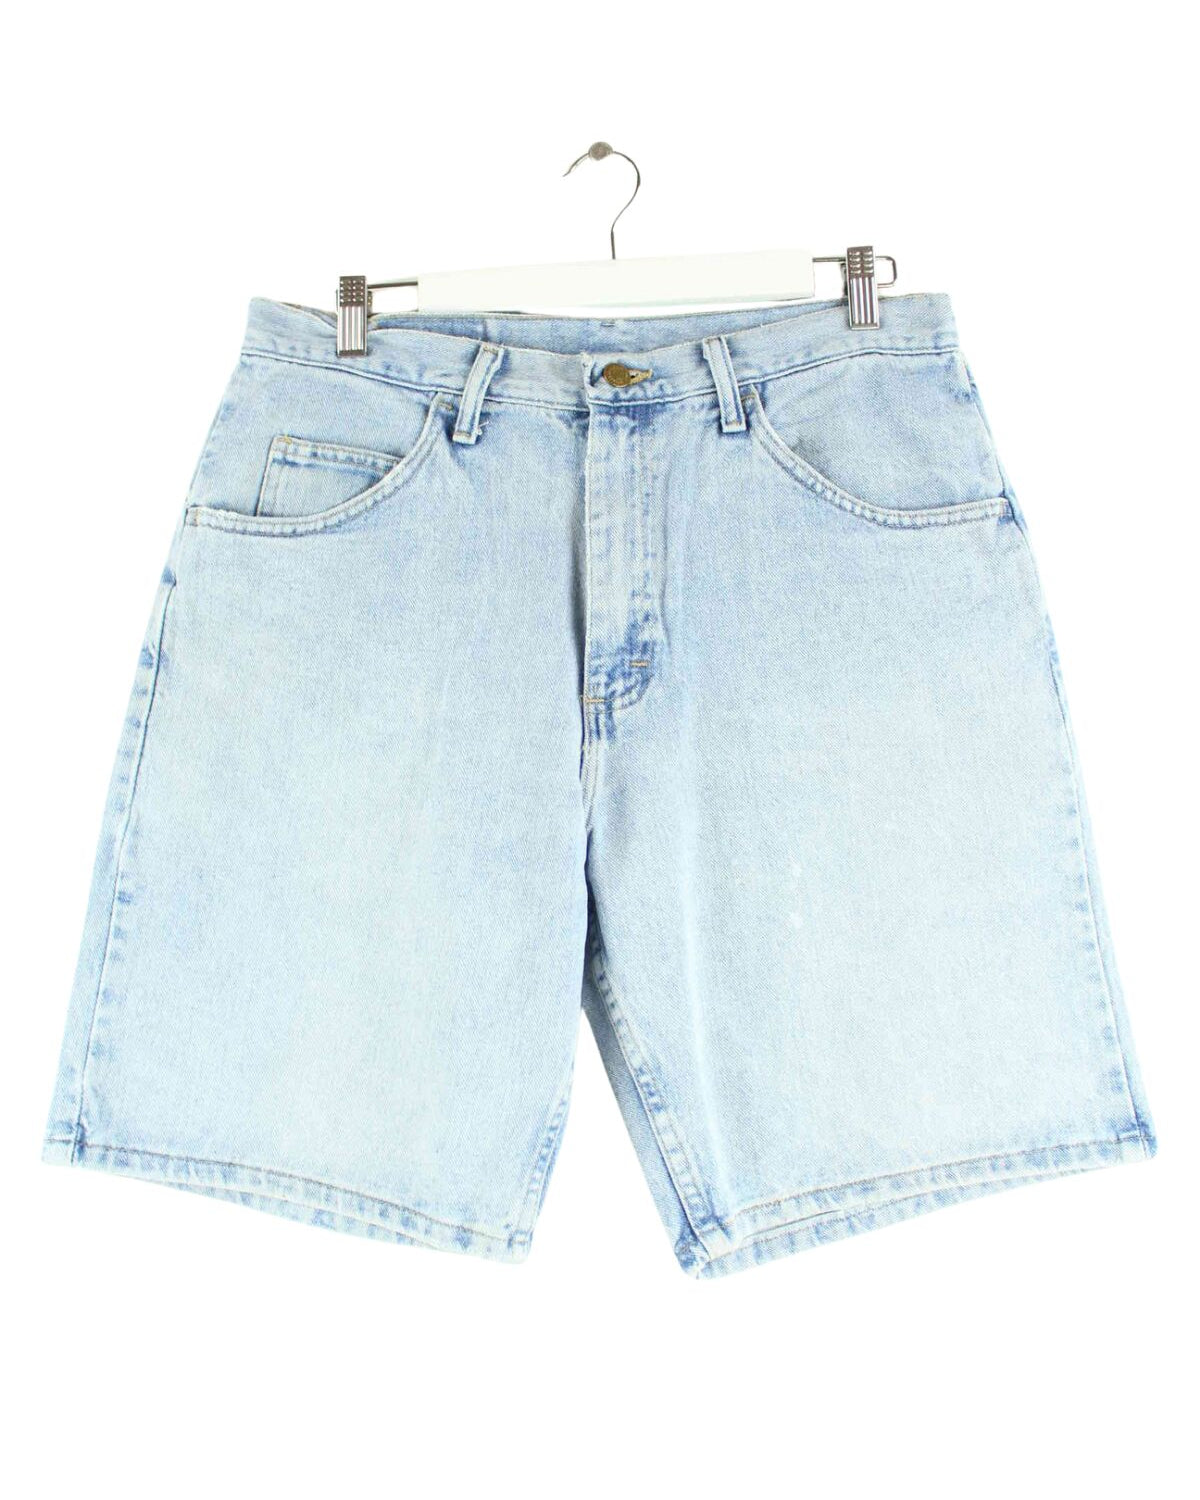 Wrangler Jorts / Jeans Shorts Blau W30 (front image)